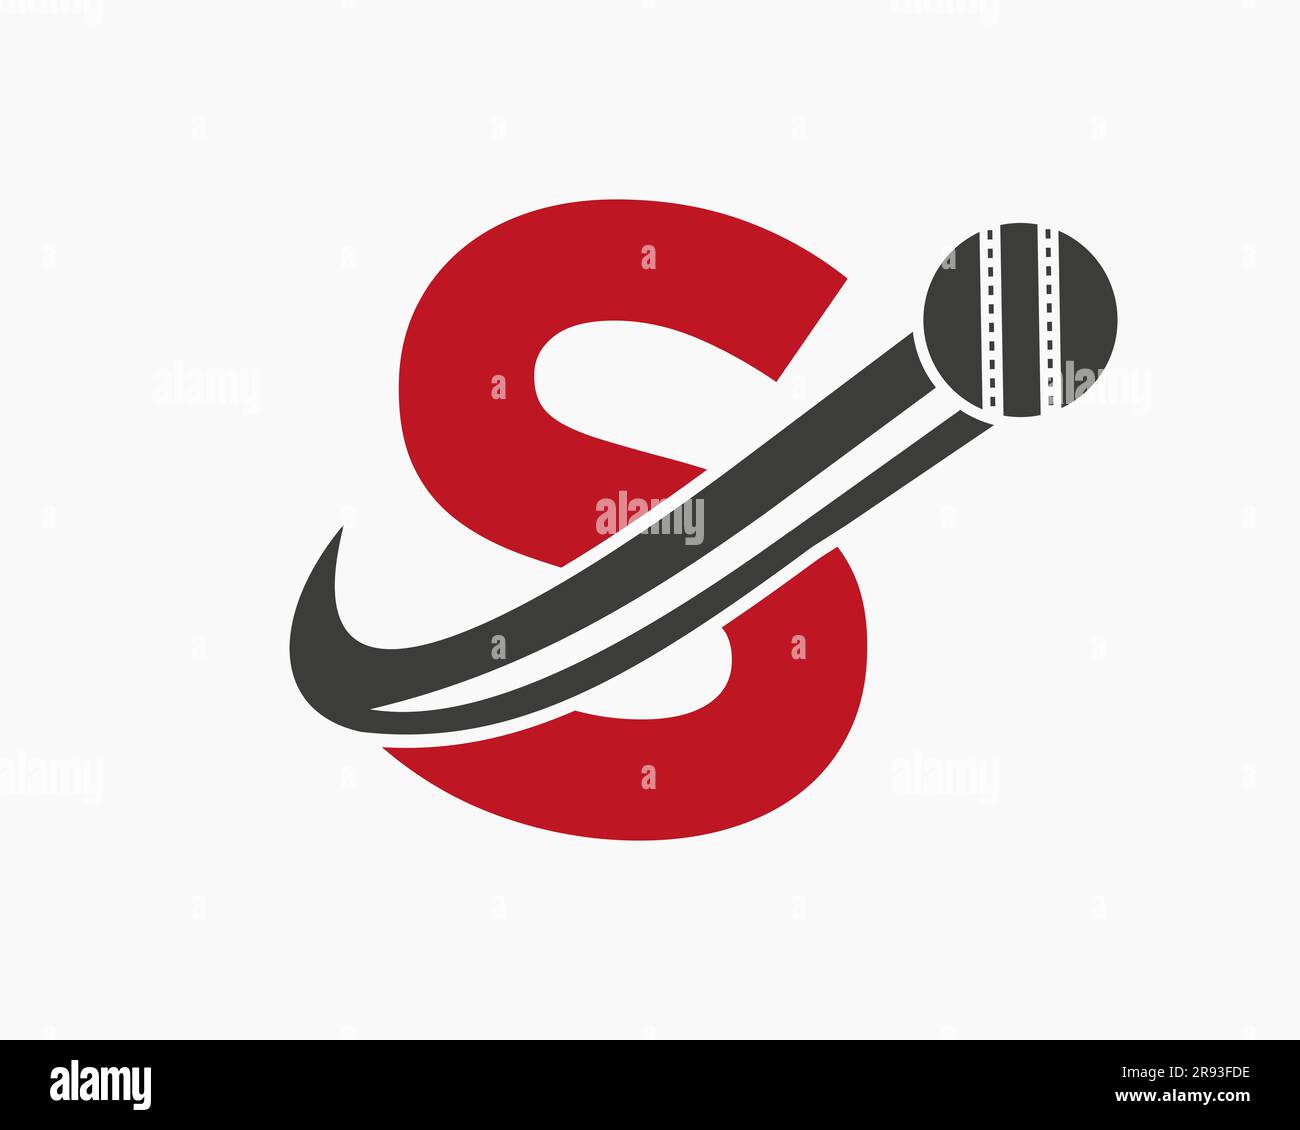 Anfangsbuchstabe S Cricket Logo Konzept mit beweglichem Ballsymbol für Cricket Club Symbol. Cricketzeichen Stock Vektor